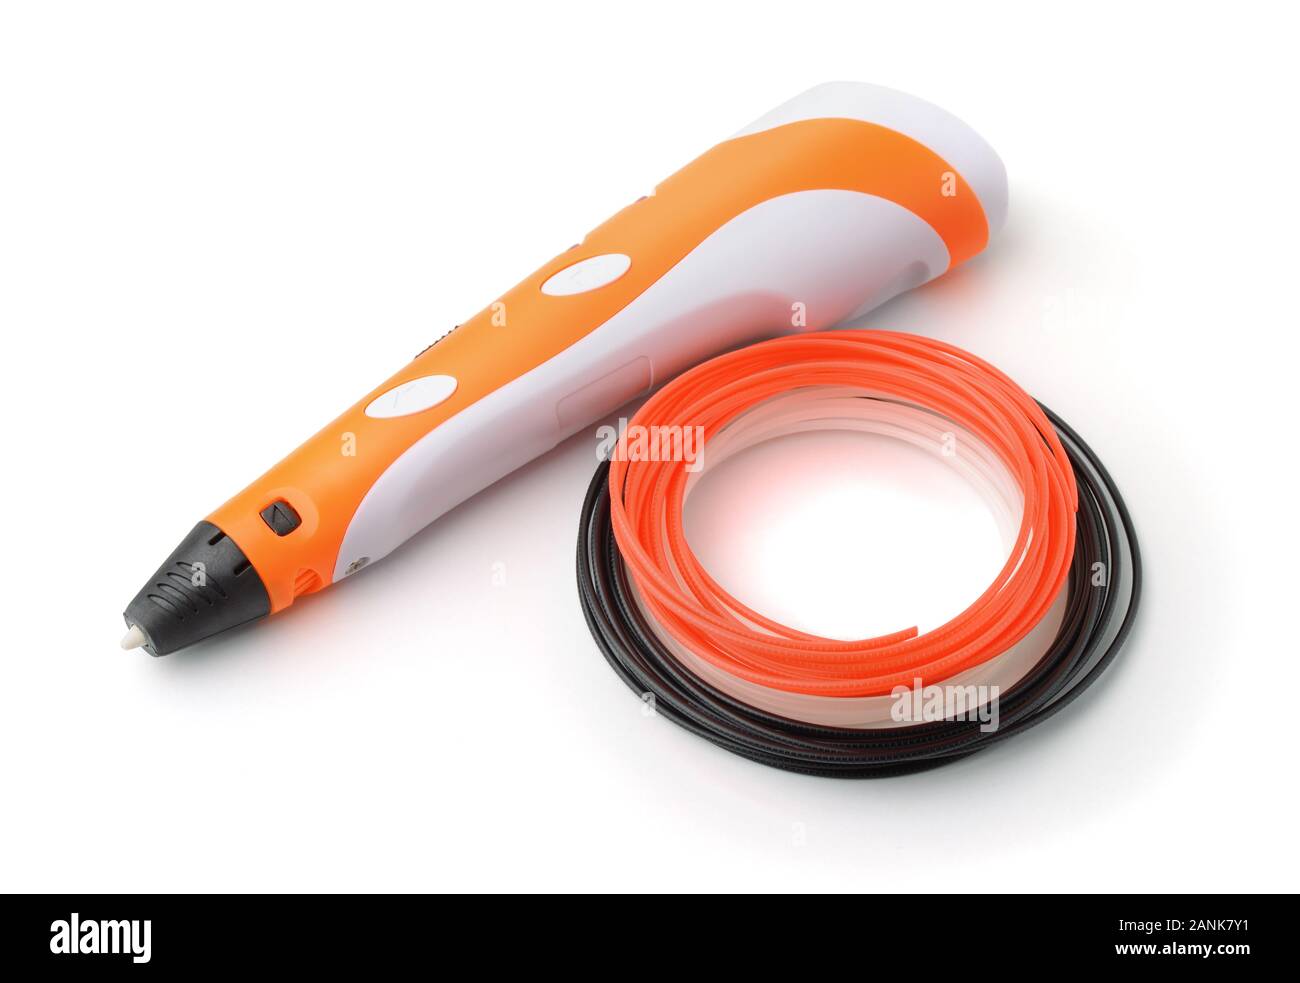 1,639 3d Pen Filament Images, Stock Photos, 3D objects, & Vectors